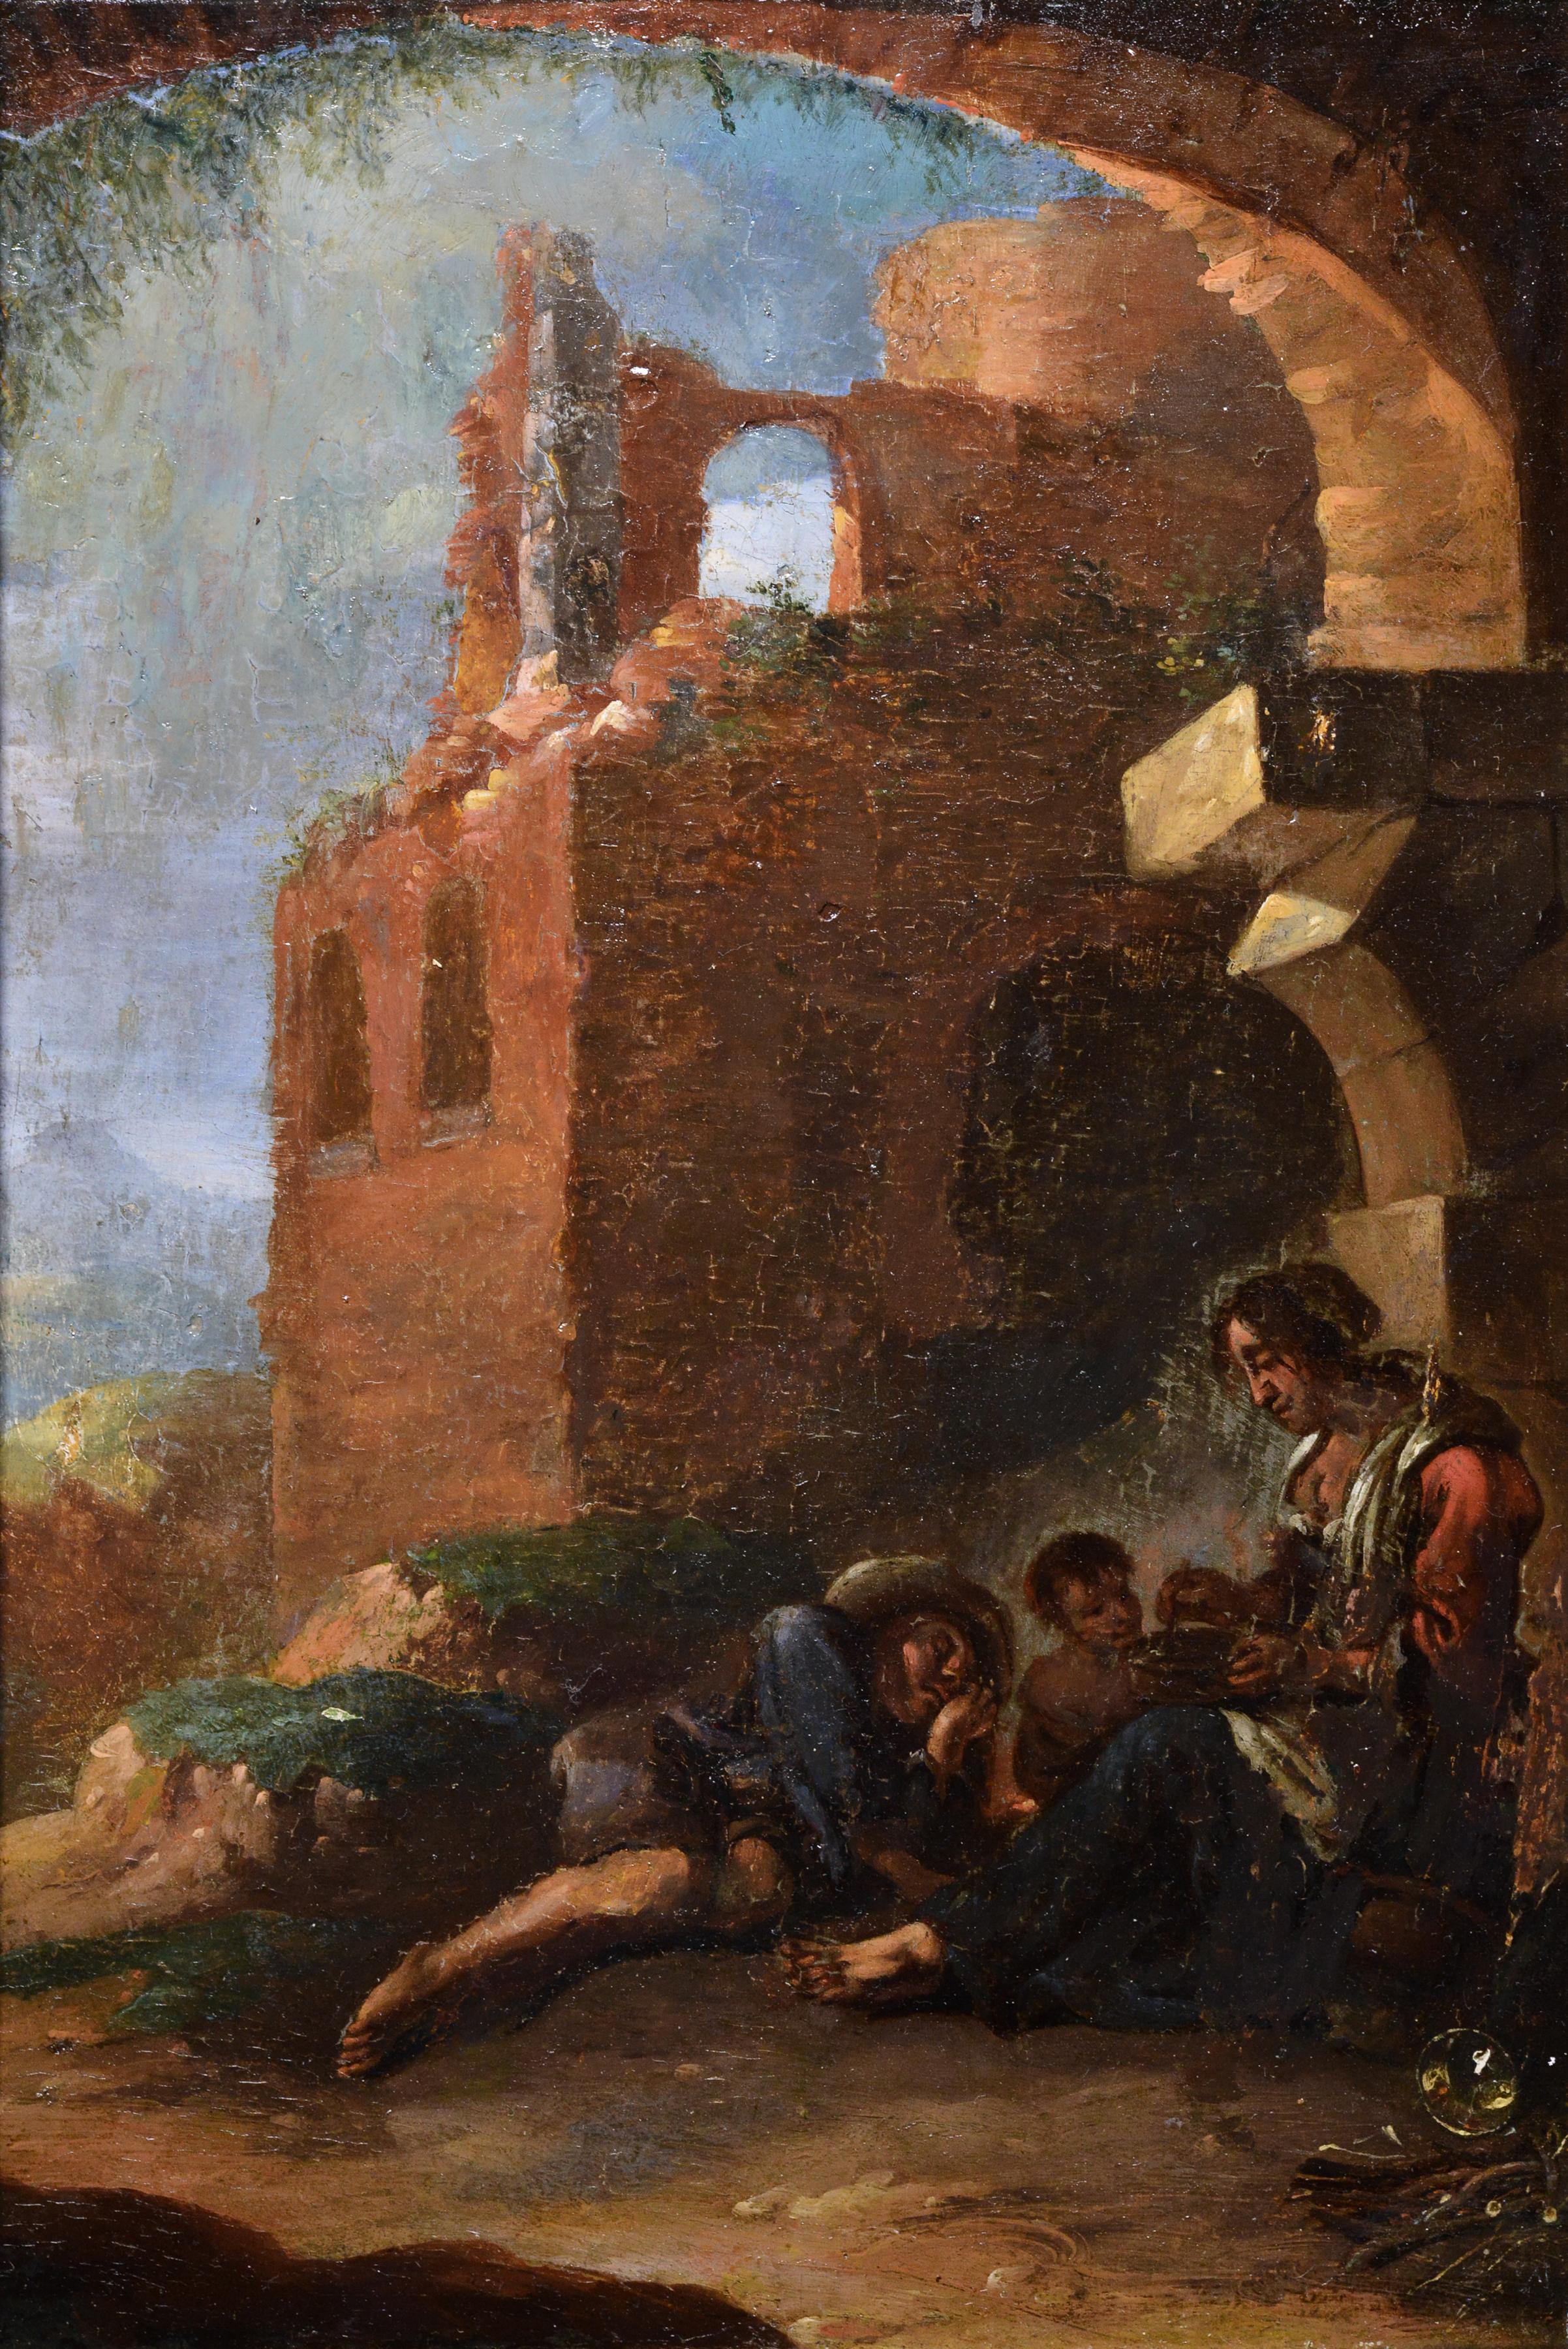 Italienische Grotto in Ruinen, Straßenszene mit ruhender Familie, Ölgemälde, 18. Jahrhundert – Painting von Unknown